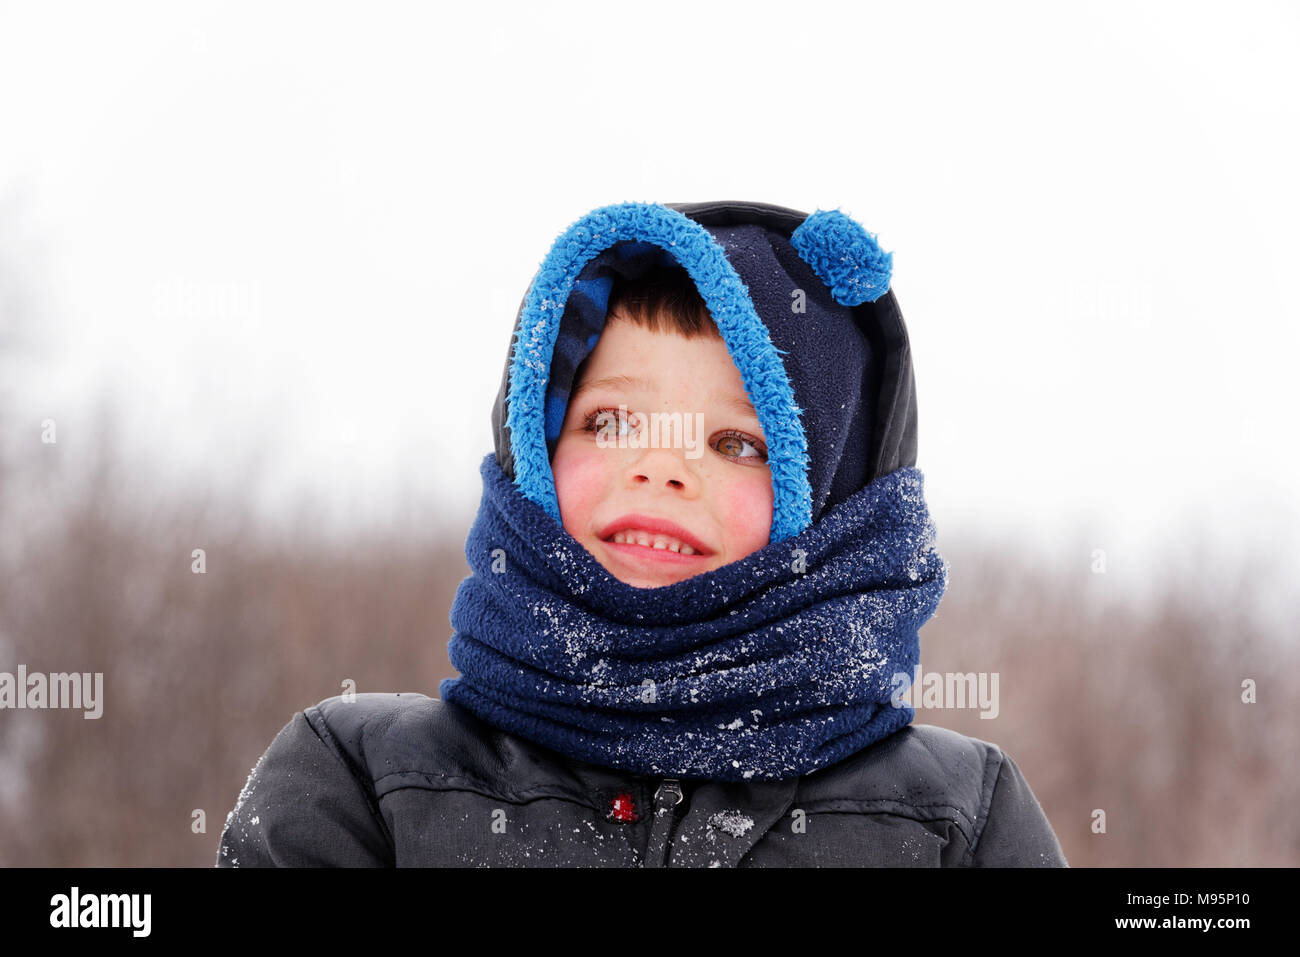 Portrait de jeune garçon (5 ans) wearing winter hat and scarf Banque D'Images